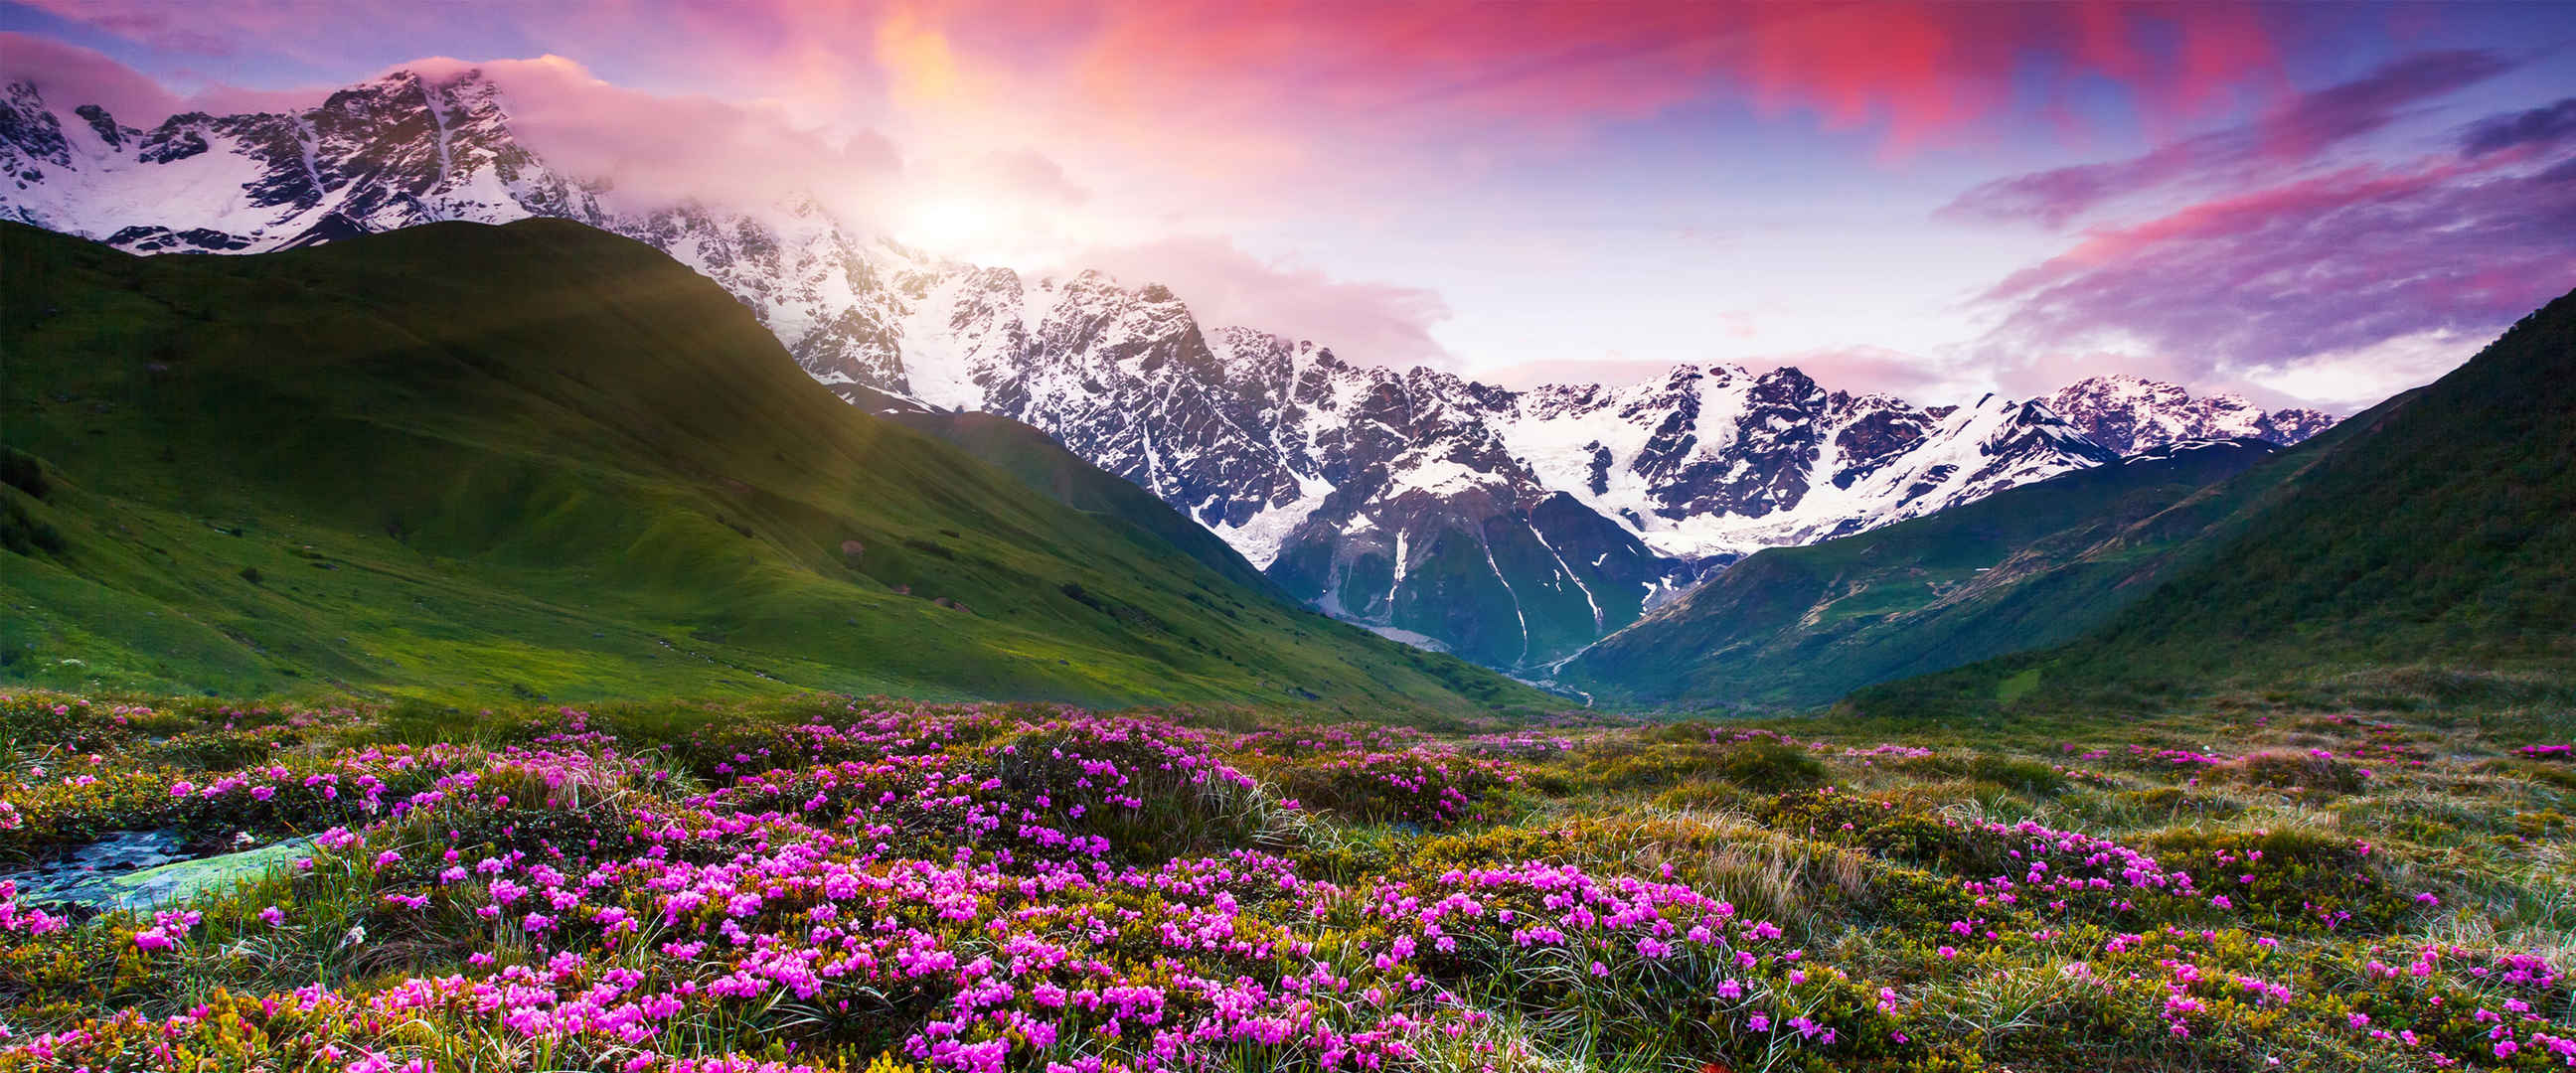 紫色天空 石头山脉 绿草鲜花 壁纸图片-